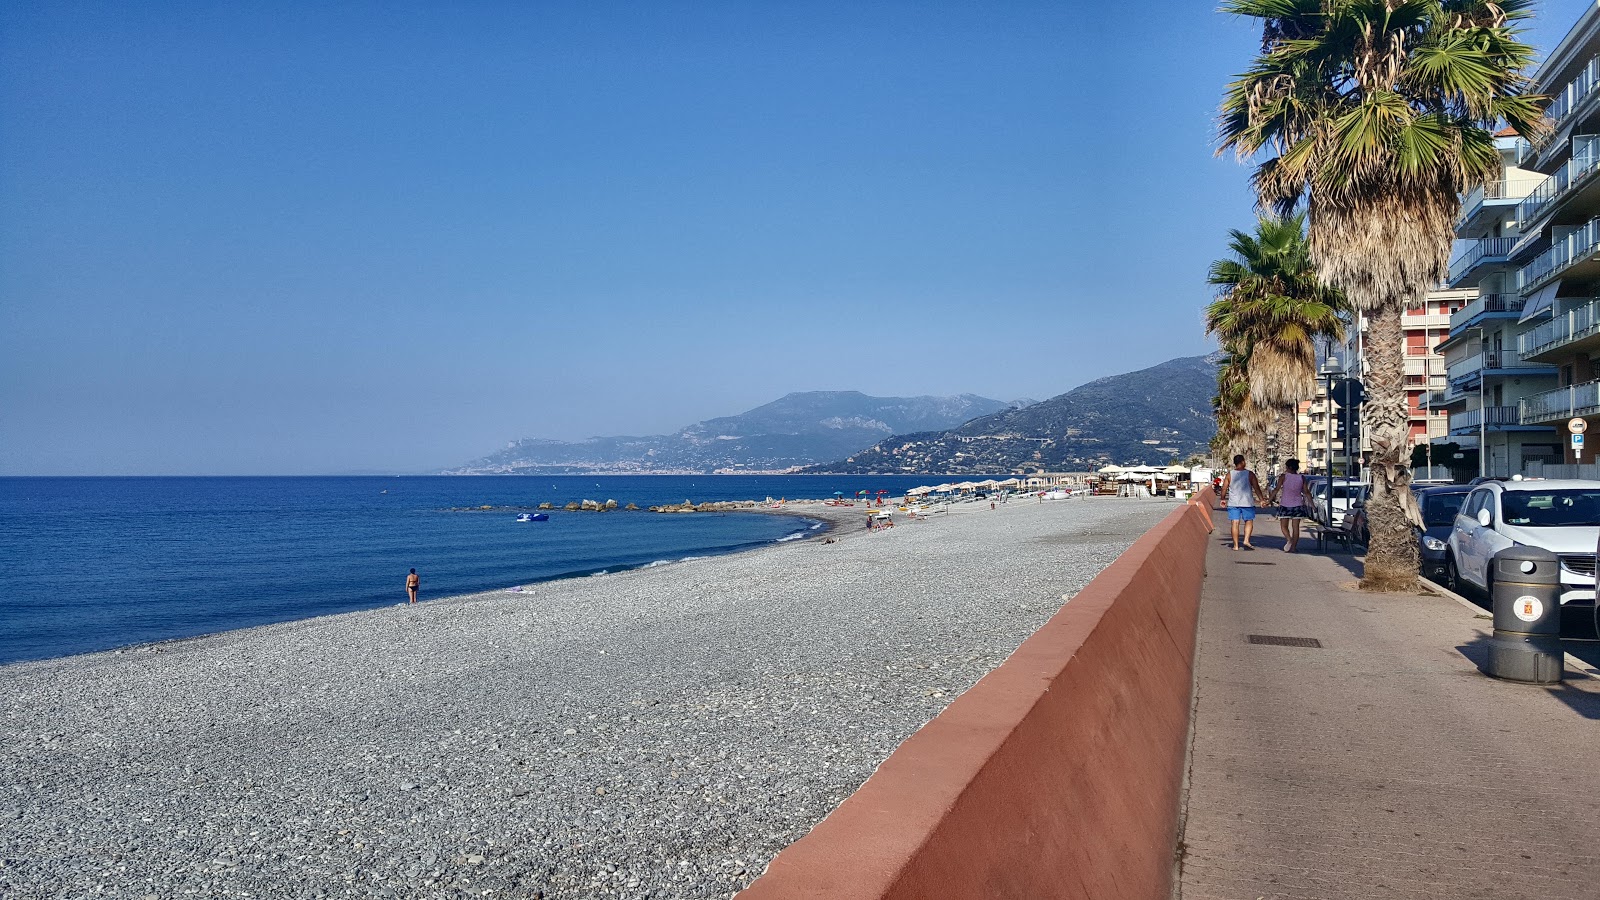 Φωτογραφία του Spiaggia Ventimiglia με μεγάλοι πολλαπλοί κόλποι